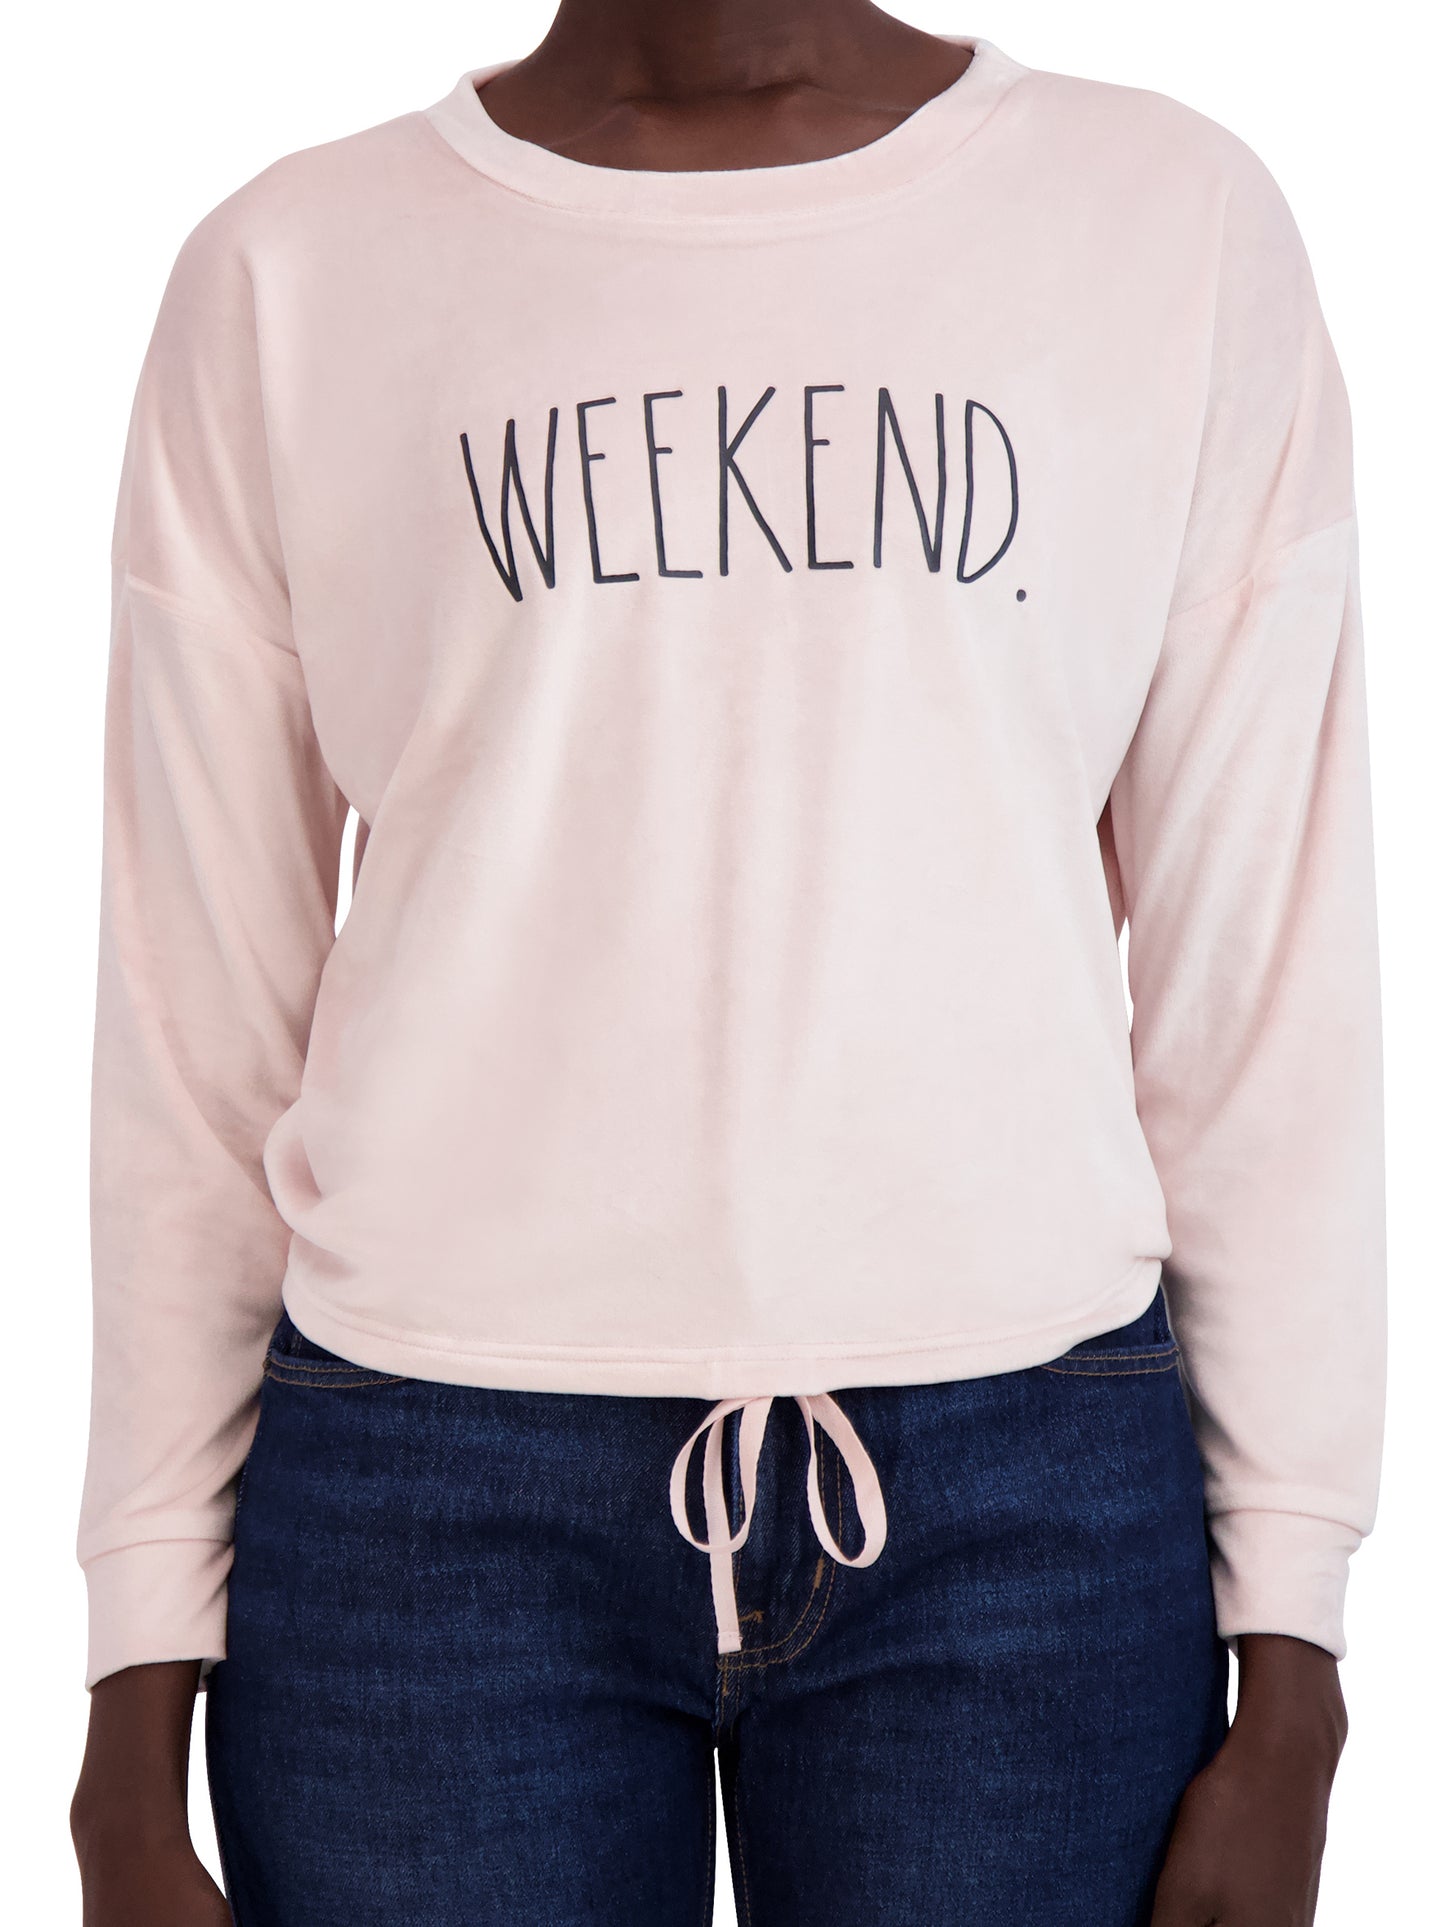 Women's "WEEKEND" Drawstring Hem Velour Sweatshirt - Rae Dunn Wear - W Sweatshirt